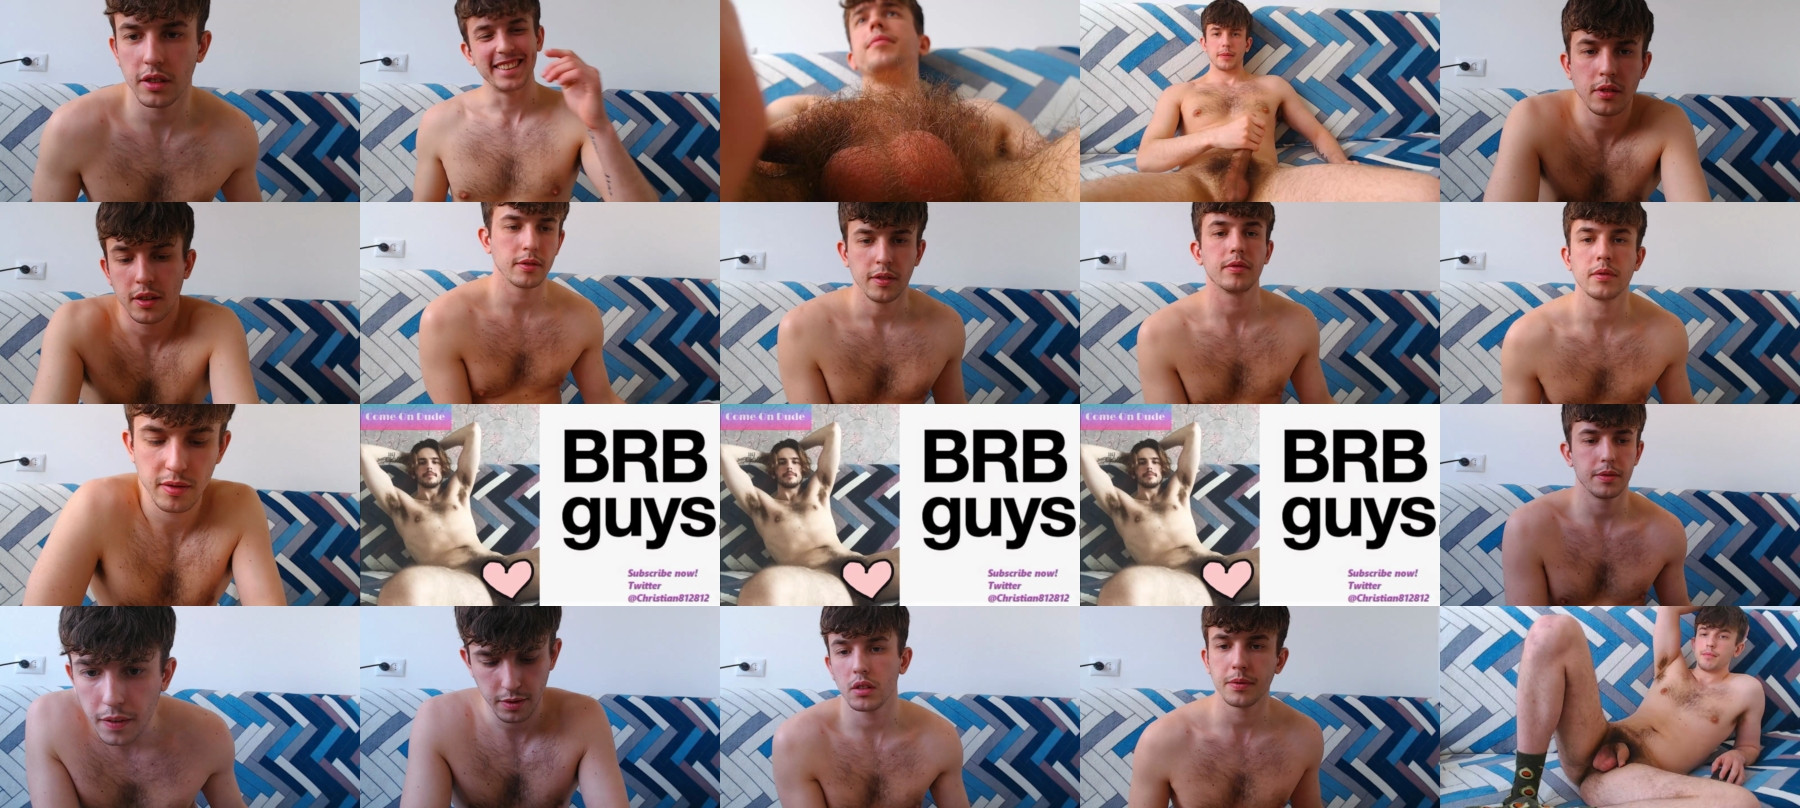 Christian_Baker  13-04-2021 Male Topless